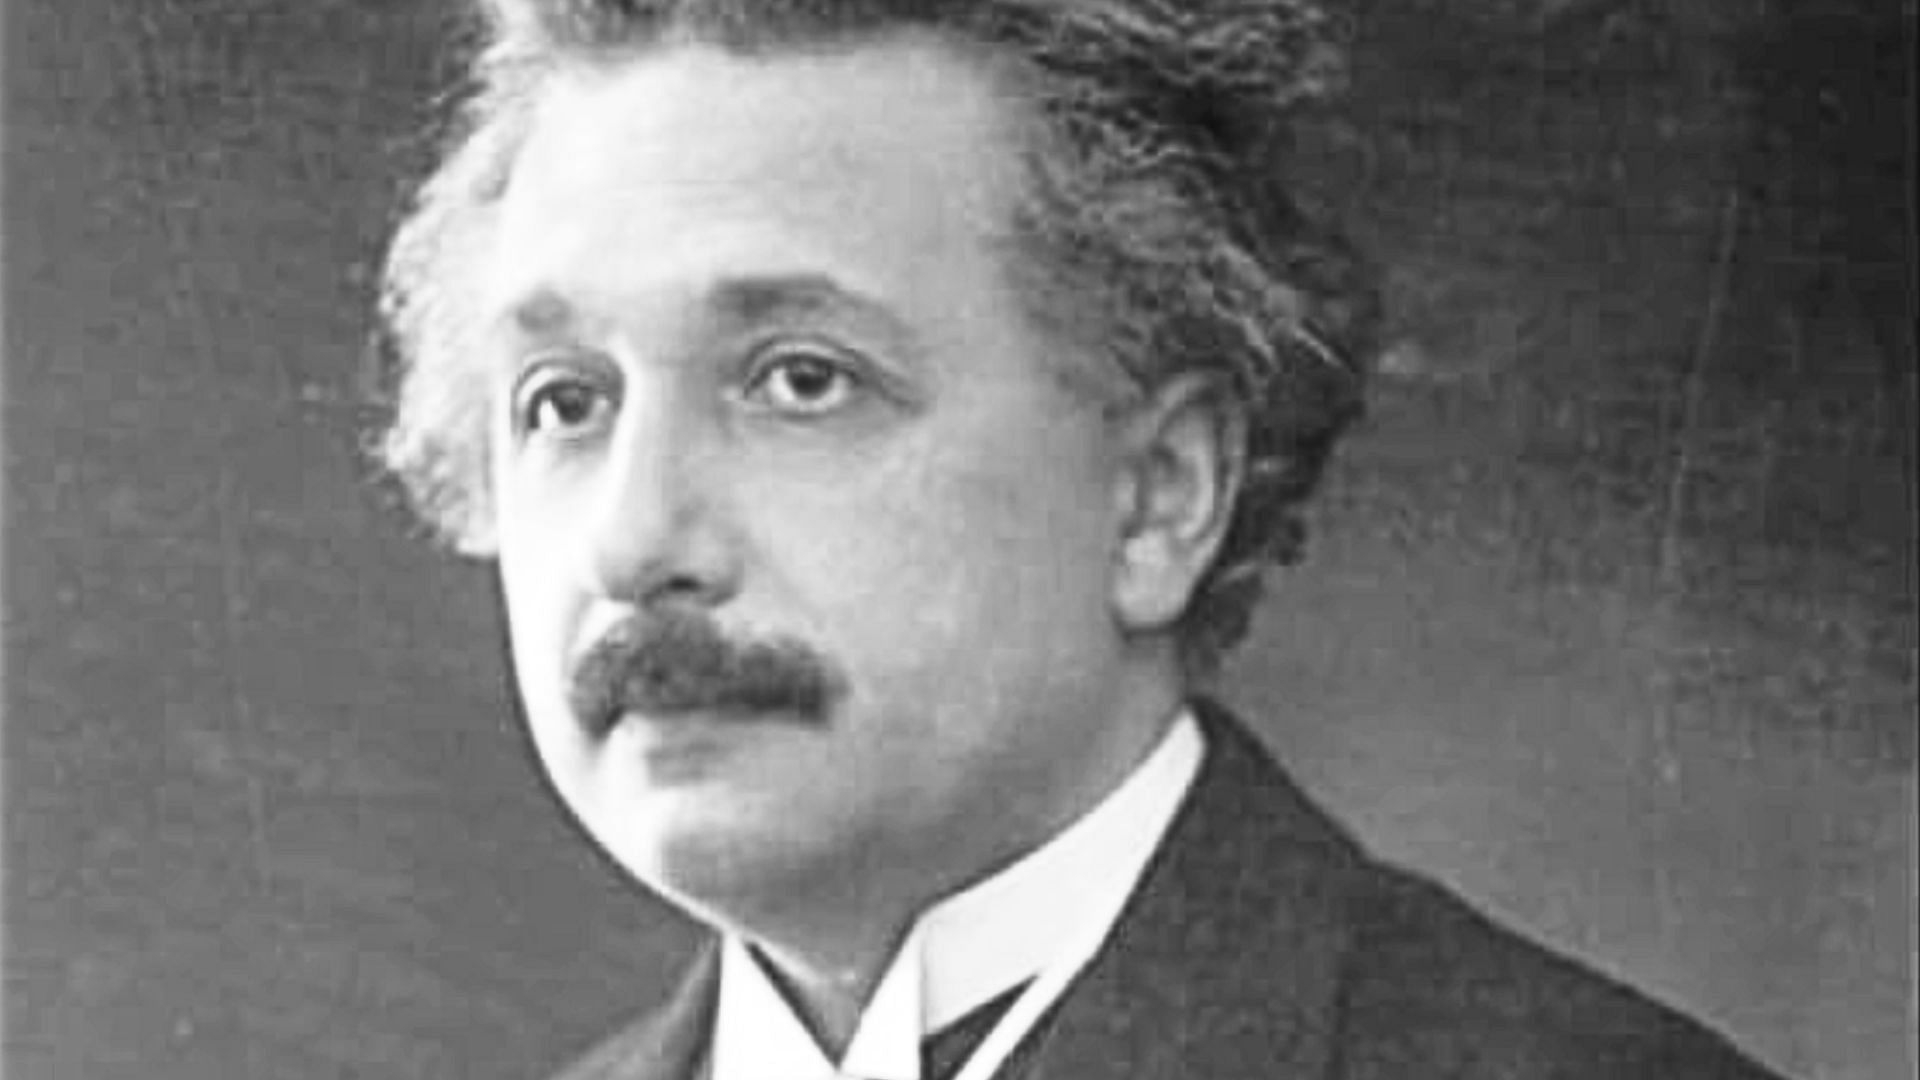 Einstein believed smoking kept him level-headed (Image via Estate of Albert Einstein)